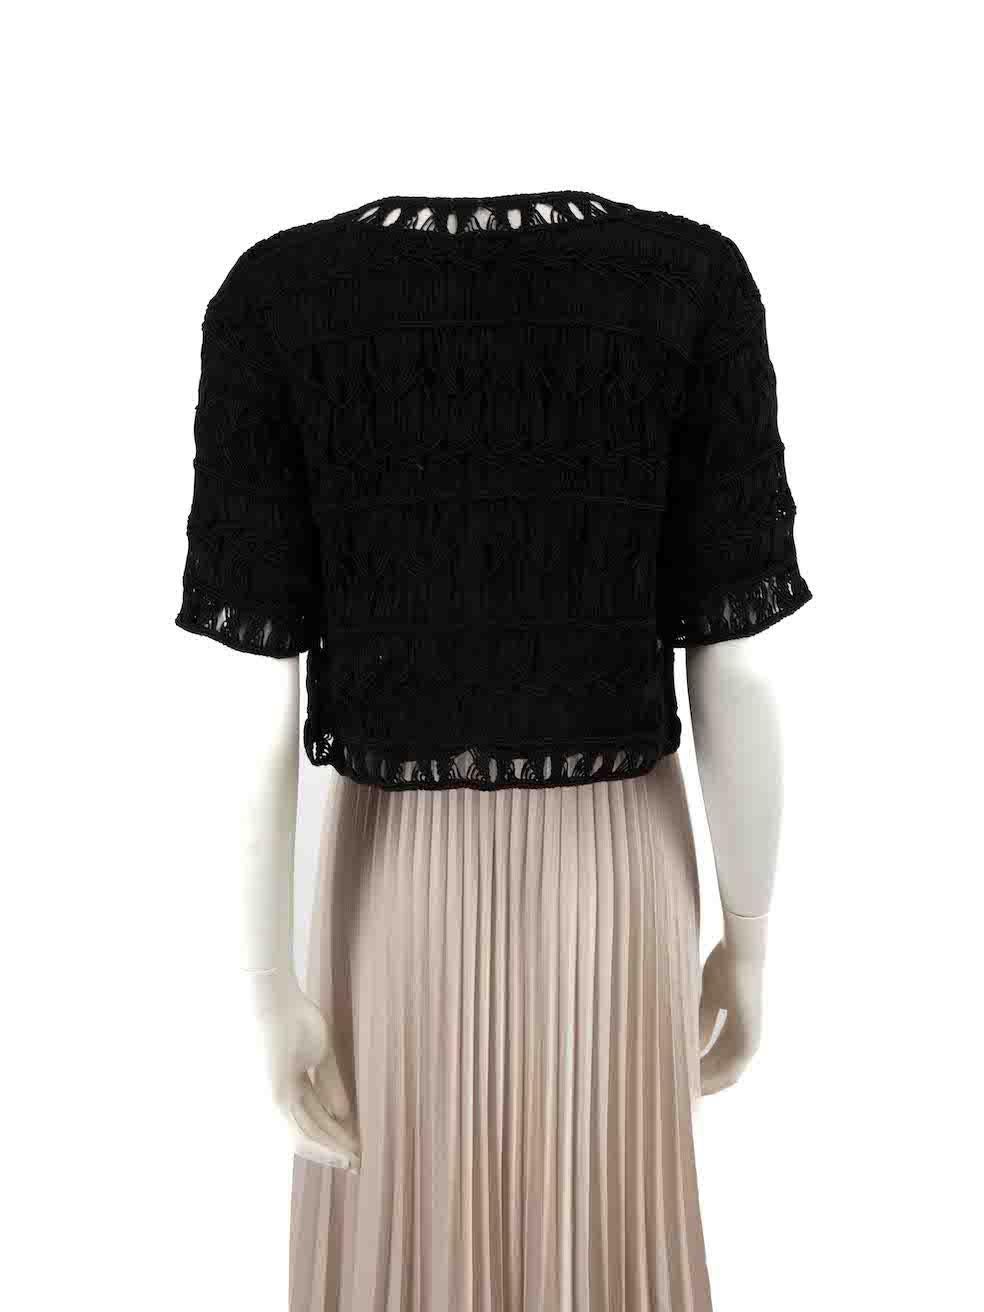 Diane Von Furstenberg Black Glitter Cardigan Size S In Good Condition For Sale In London, GB